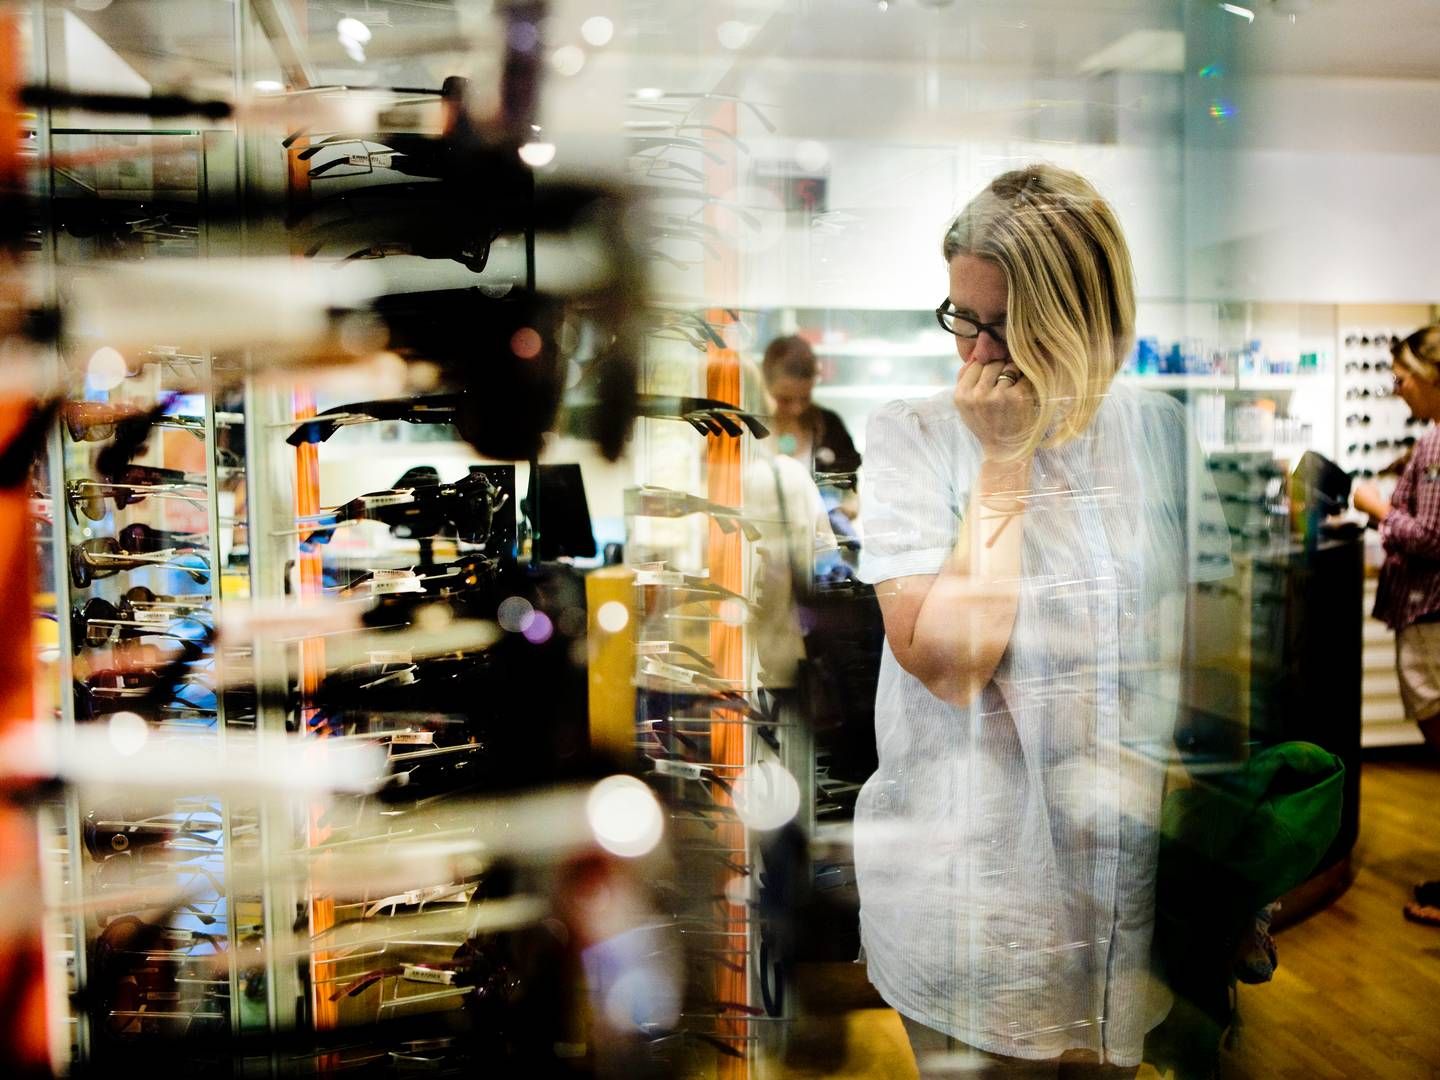 ”Det bliver billigere at tage på indkøbstur i Sverige, men det bliver også billigere for virksomheder at købe varer,” siger Kim Blindbæk, seniorøkonom i Sydbank, om effekten af den svenske inflation i Danmark. | Foto: Tobias Selnæs Markussen